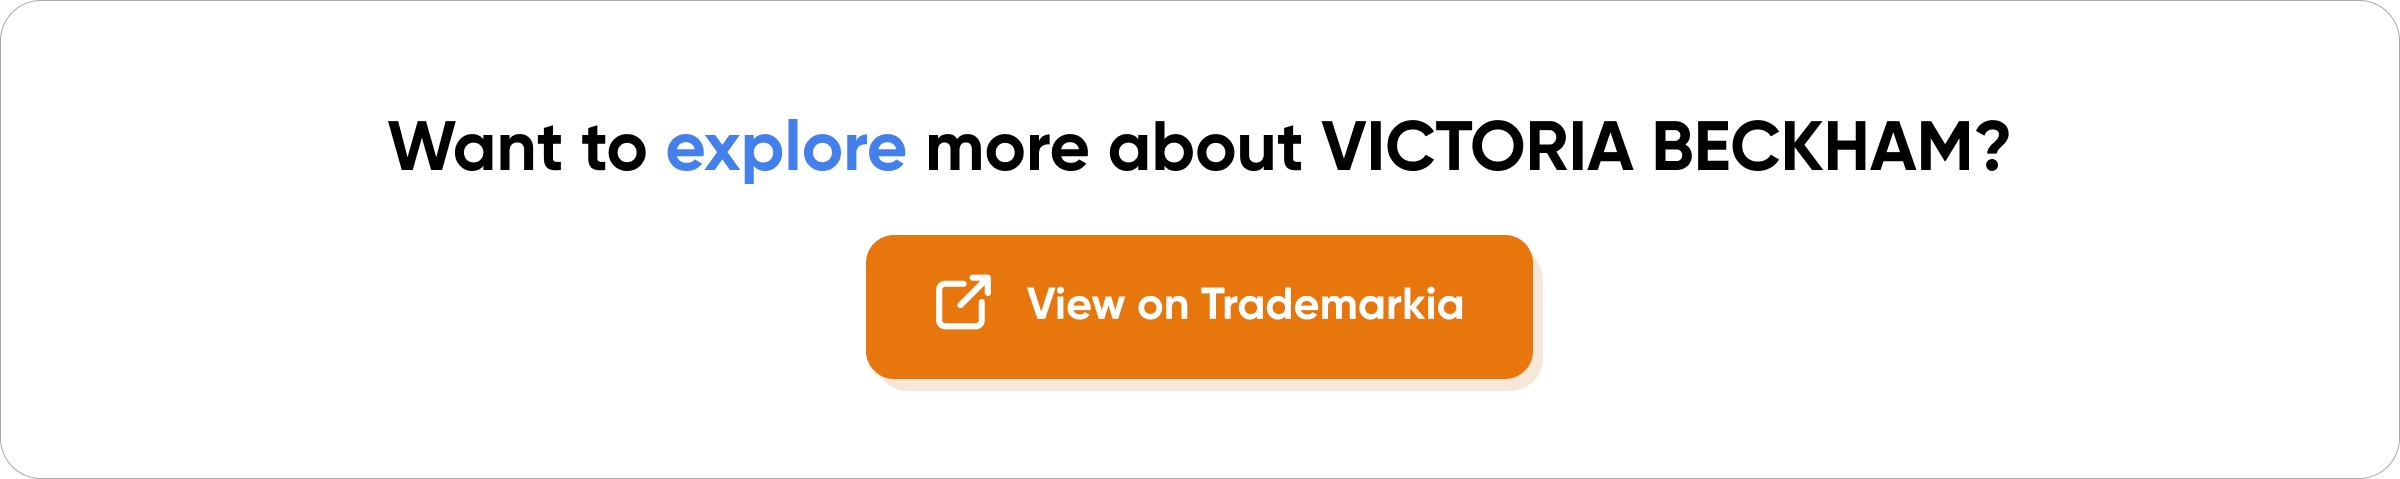 Victoria Beckham Trademark